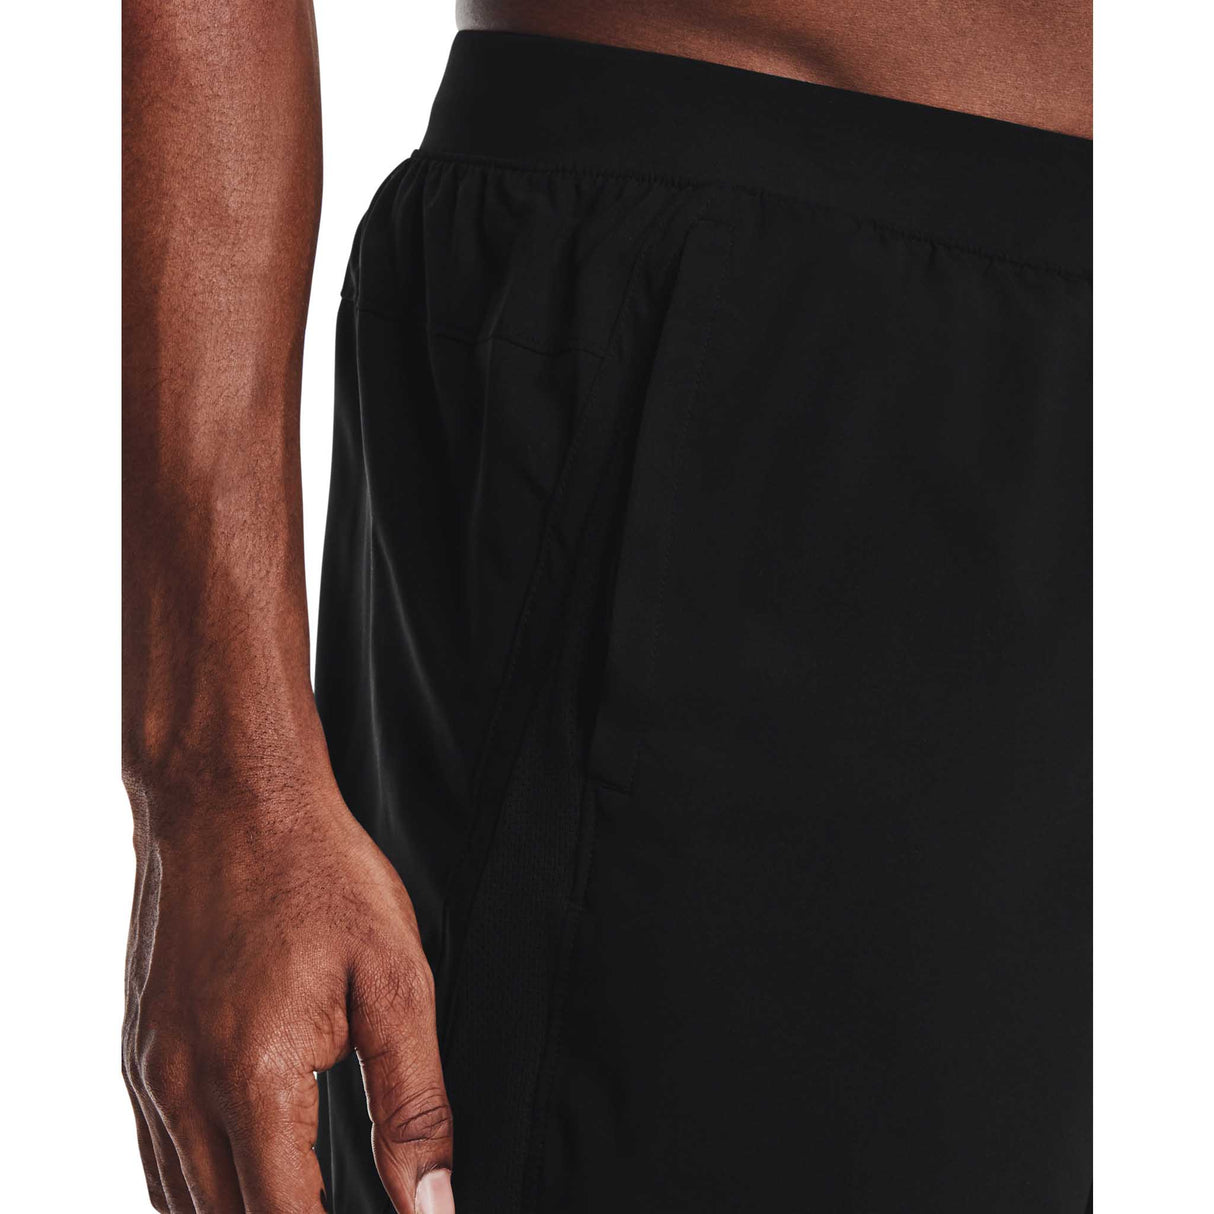 UA Launch 7 inch running shorts for men